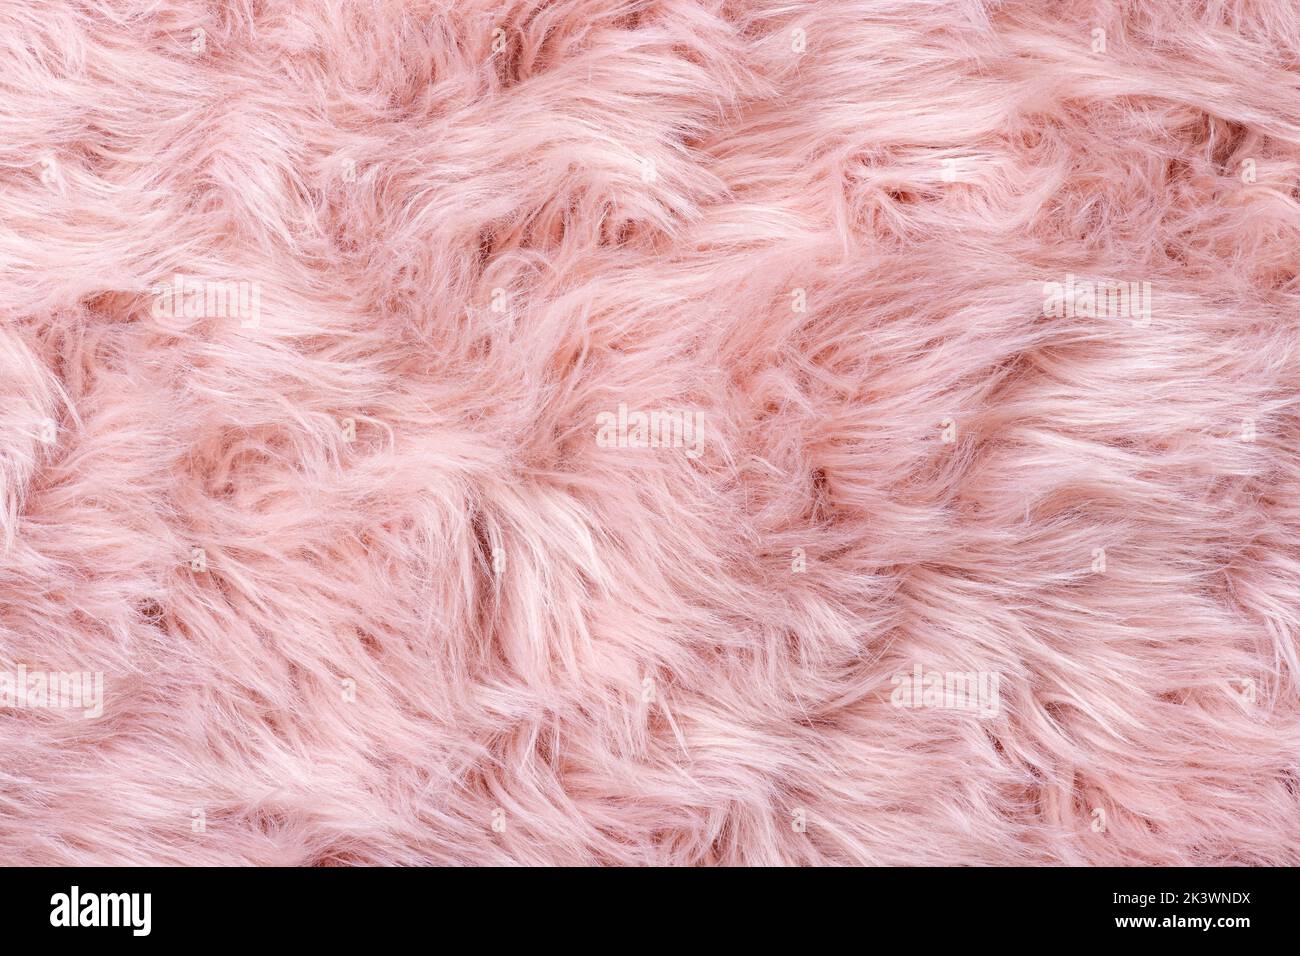 Pelliccia rosa immagini e fotografie stock ad alta risoluzione - Alamy